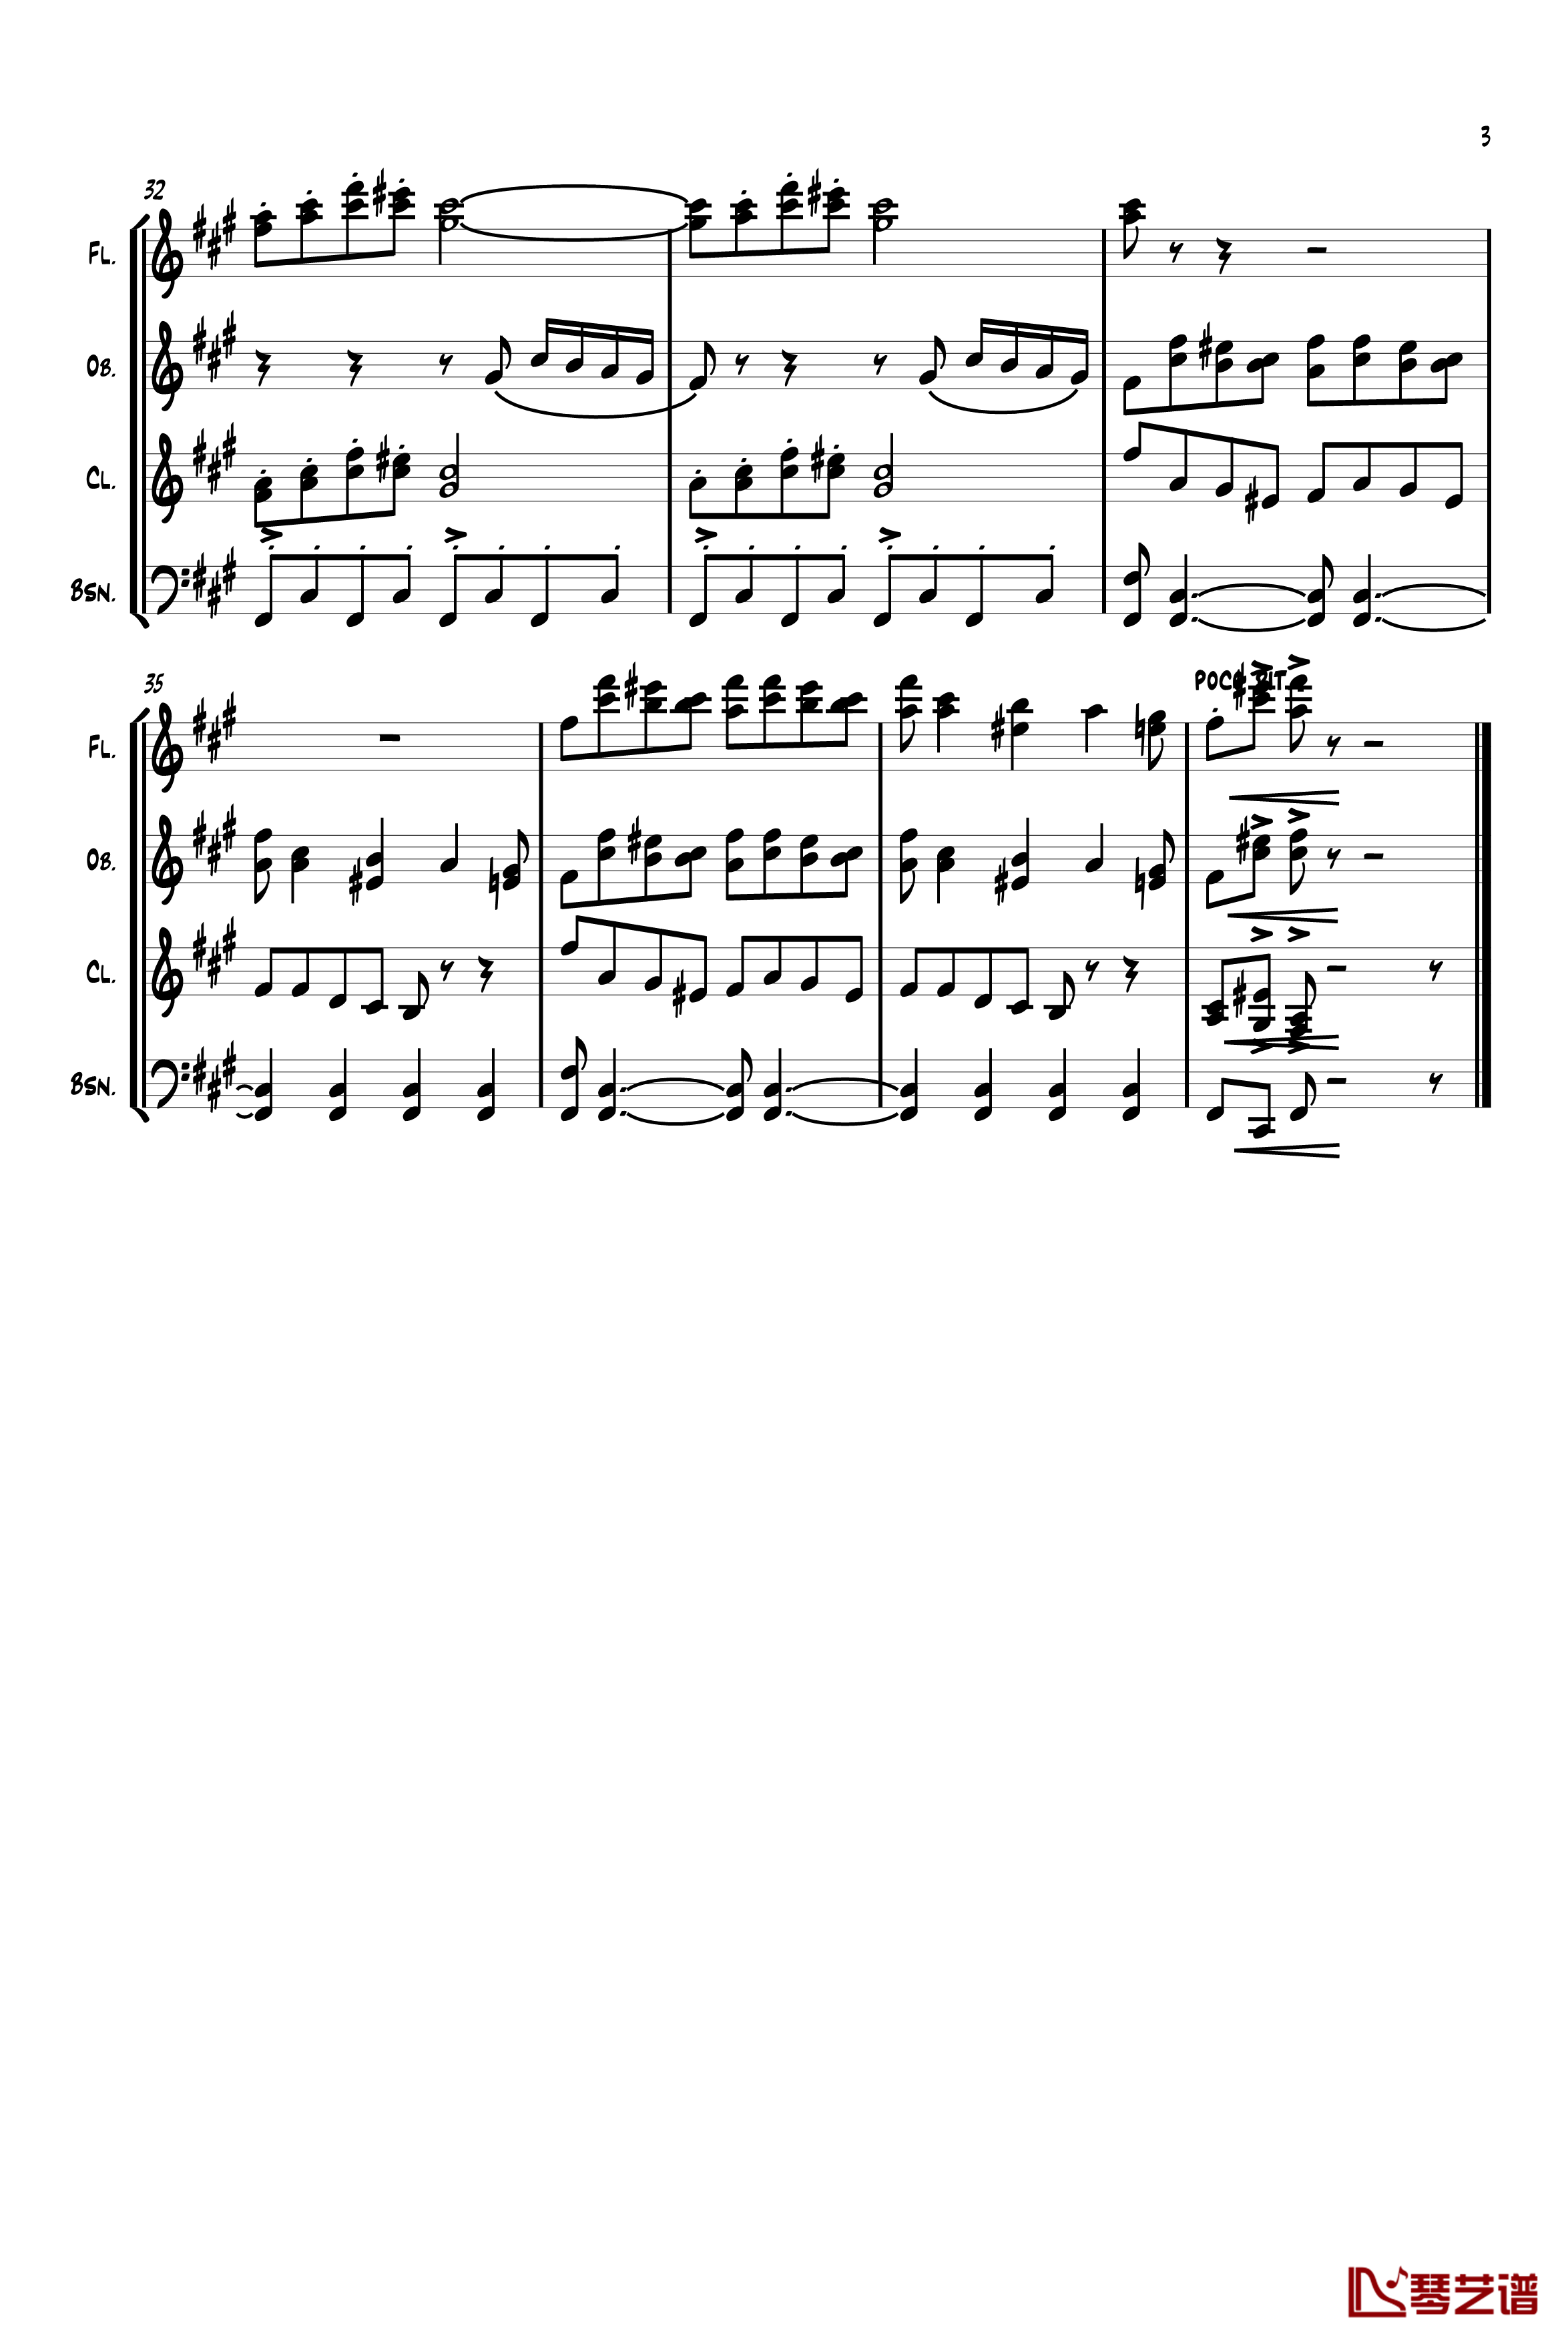 四小天鹅舞曲钢琴谱-柴科夫斯基-Peter Ilyich Tchaikovsky3